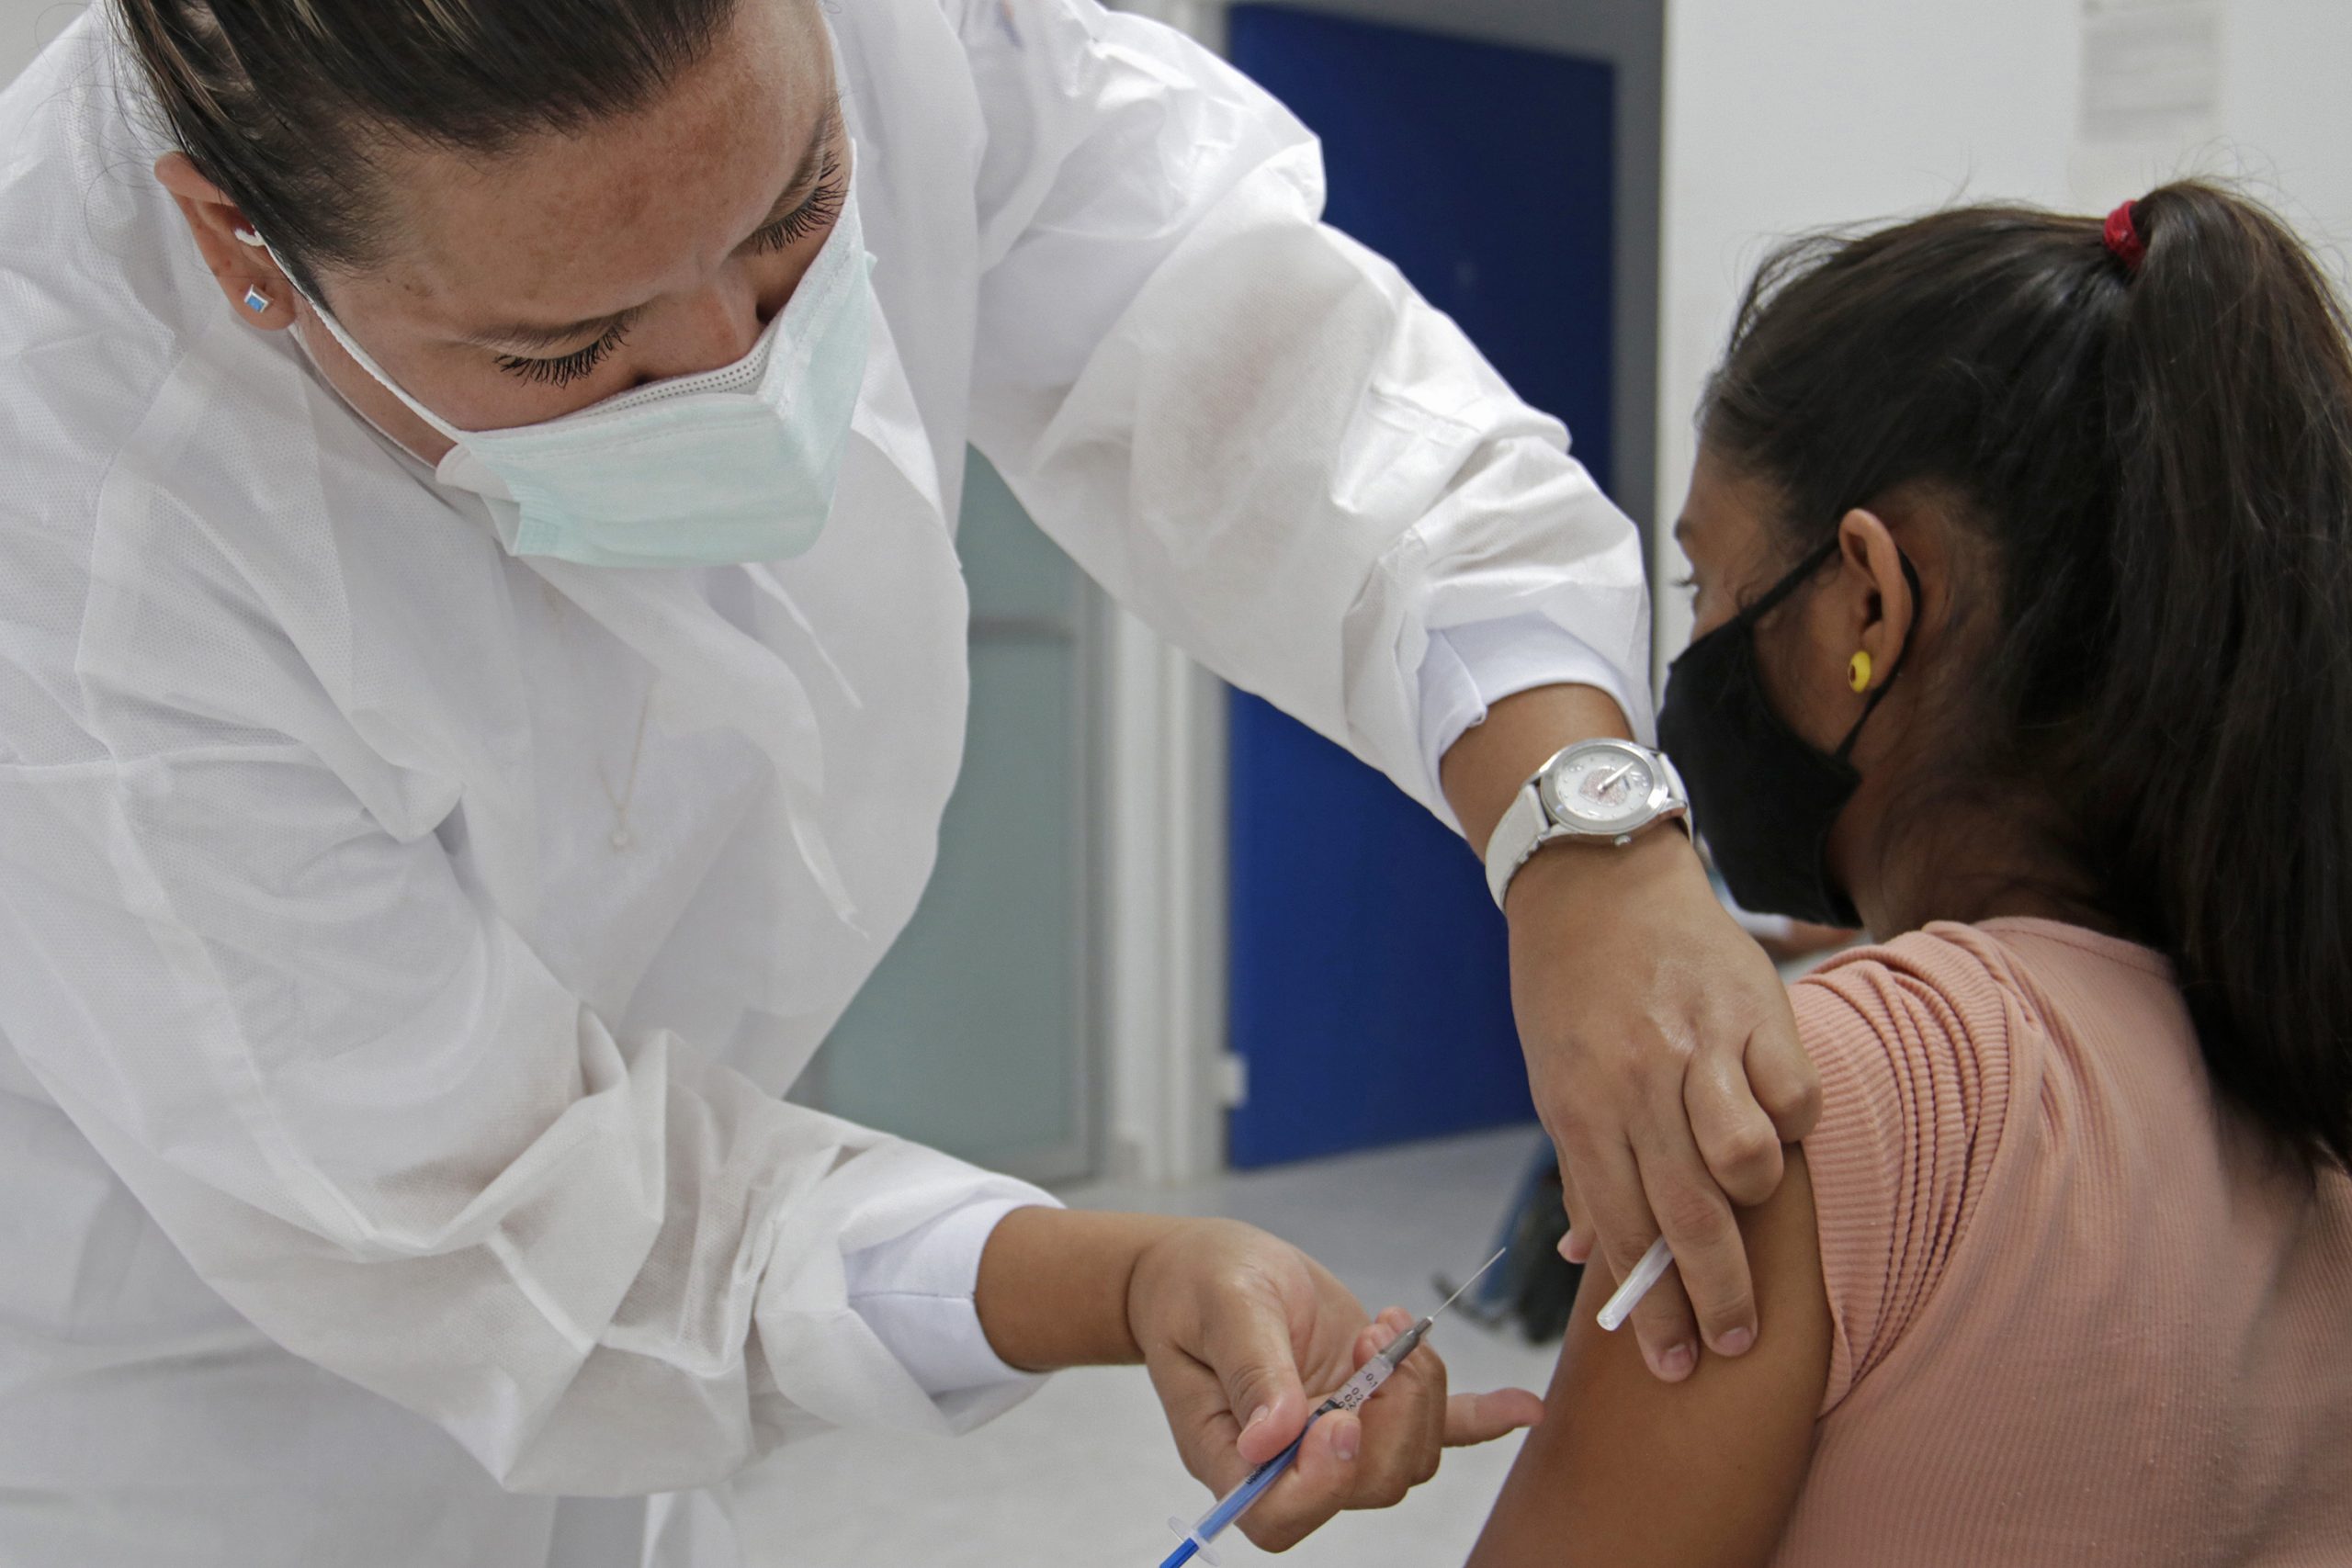 PETLALCINGO, Pue. 21 Septiembre 2021.- Proceso de vacunación anti Covid-19 en Petlalcingo, uno de los 102 municipios del Estado donde se aplicarán 312 mil segundas dosis. //Ivania Medina/Agencia Enfoque//